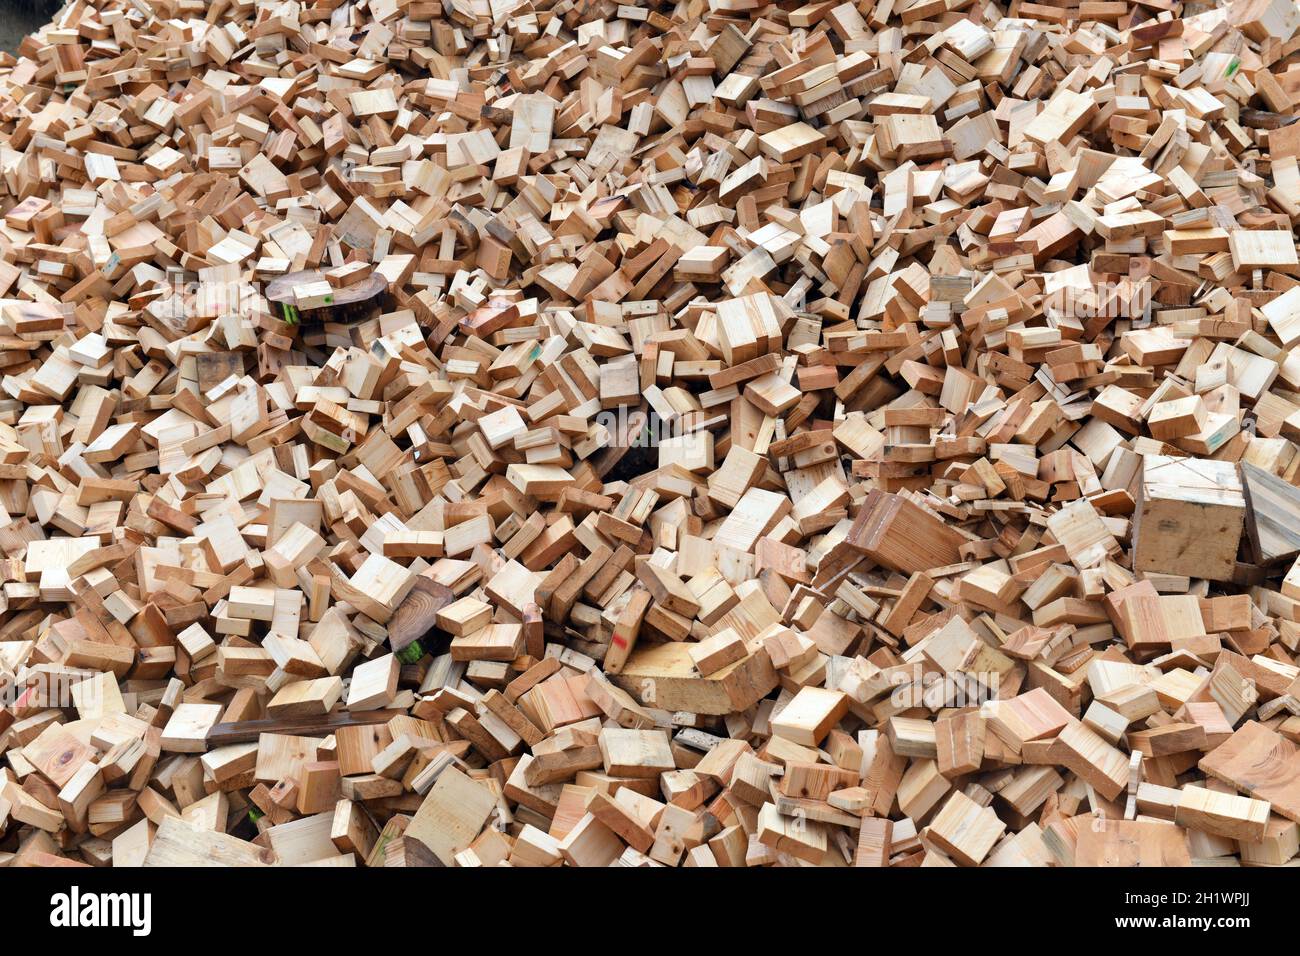 Holzabfälle bei einer holzverarbeitenden Firma in Österreich - rifiuti di legno presso un'azienda di lavorazione del legno in Austria Foto Stock